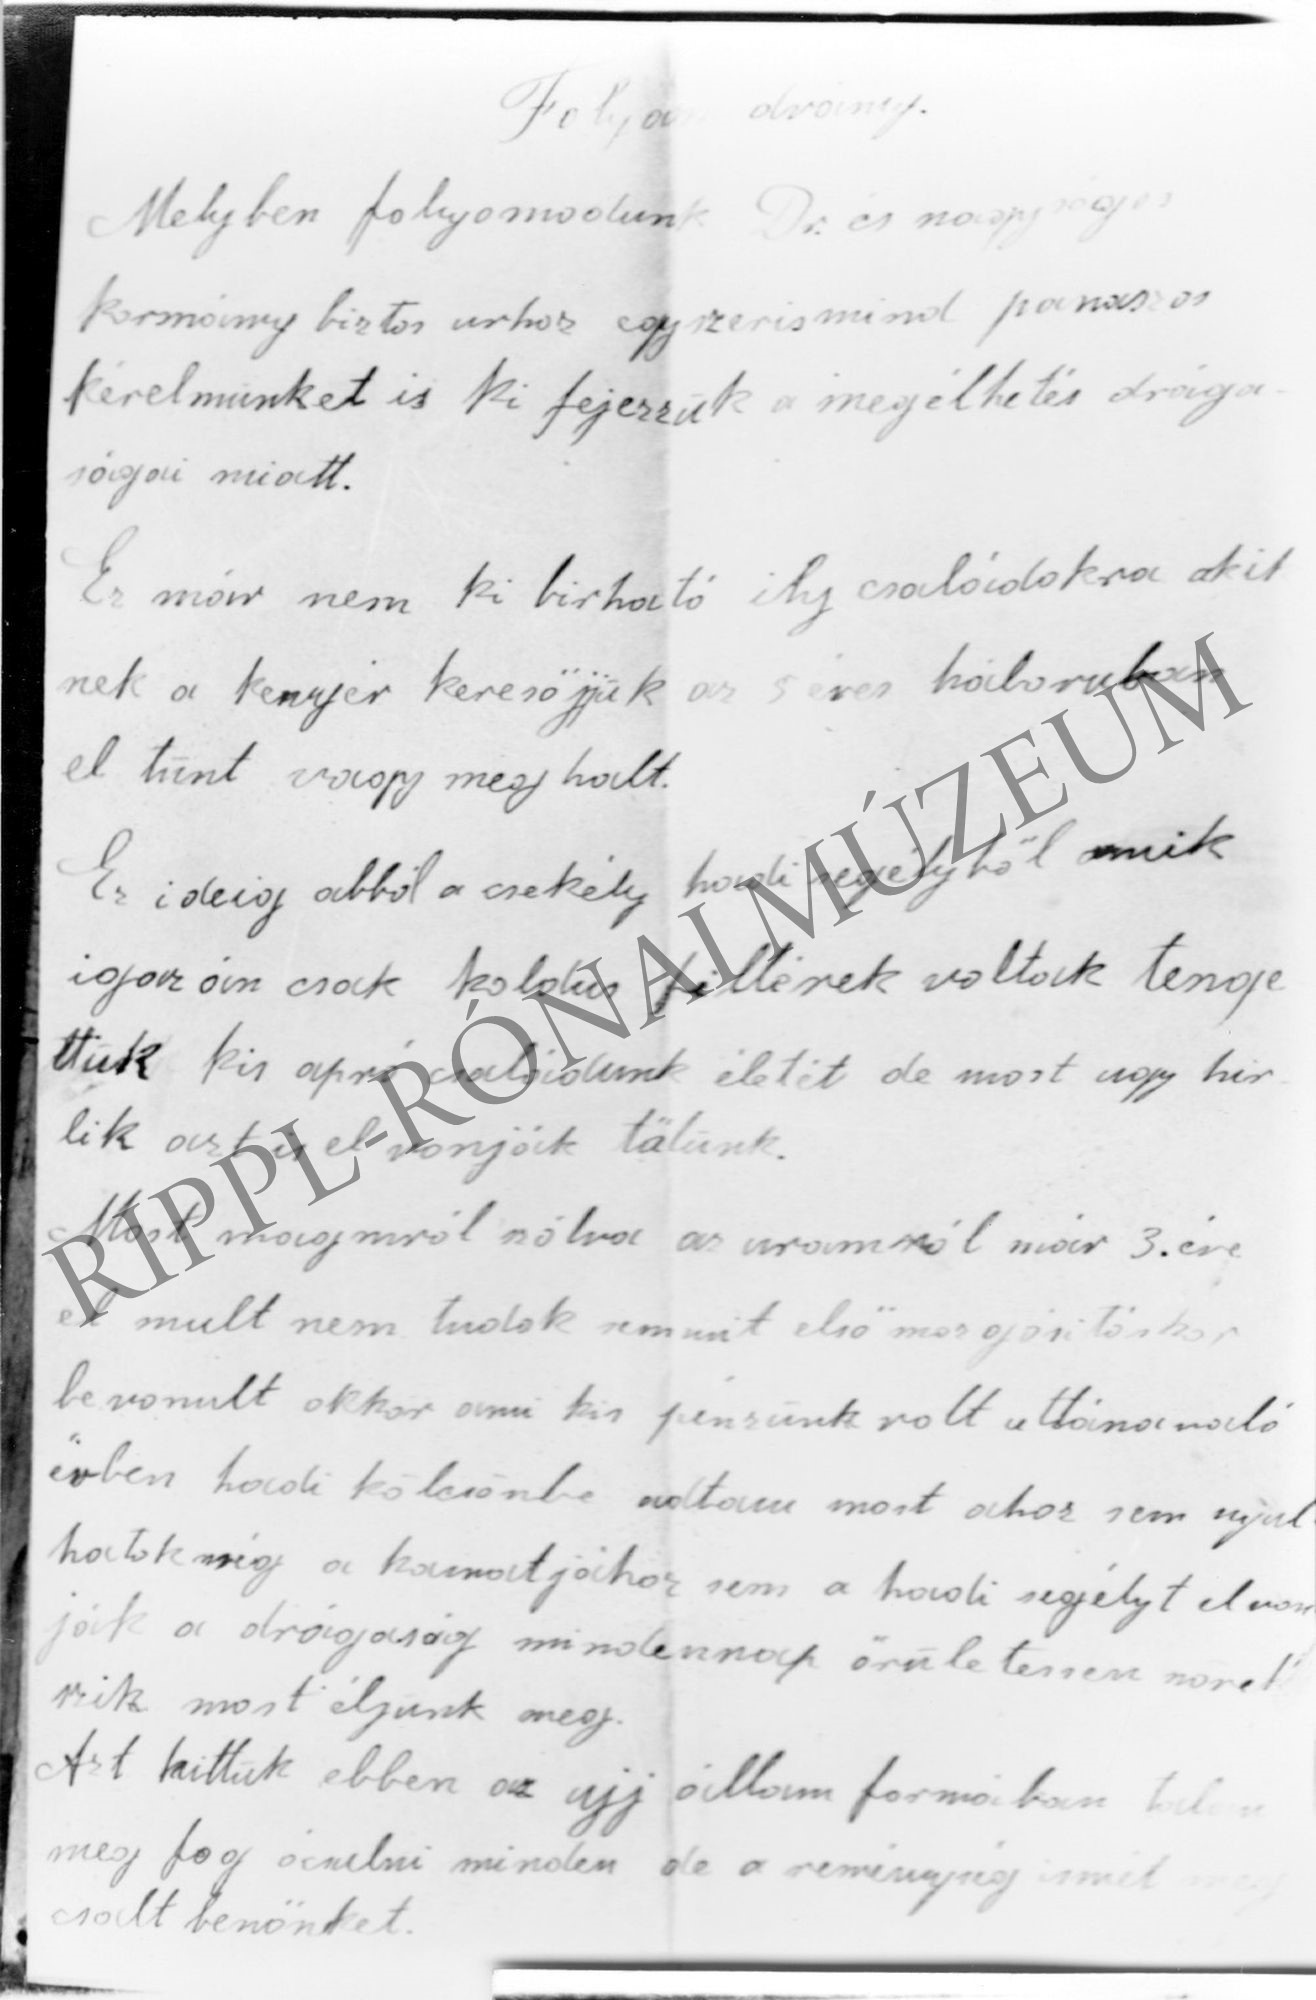 A nagycsepelyi hadsegélyes asszonyok kérelme Svastich kormánybiztoshoz - 1919. szept. 25. - 1. oldal (Rippl-Rónai Múzeum CC BY-NC-SA)